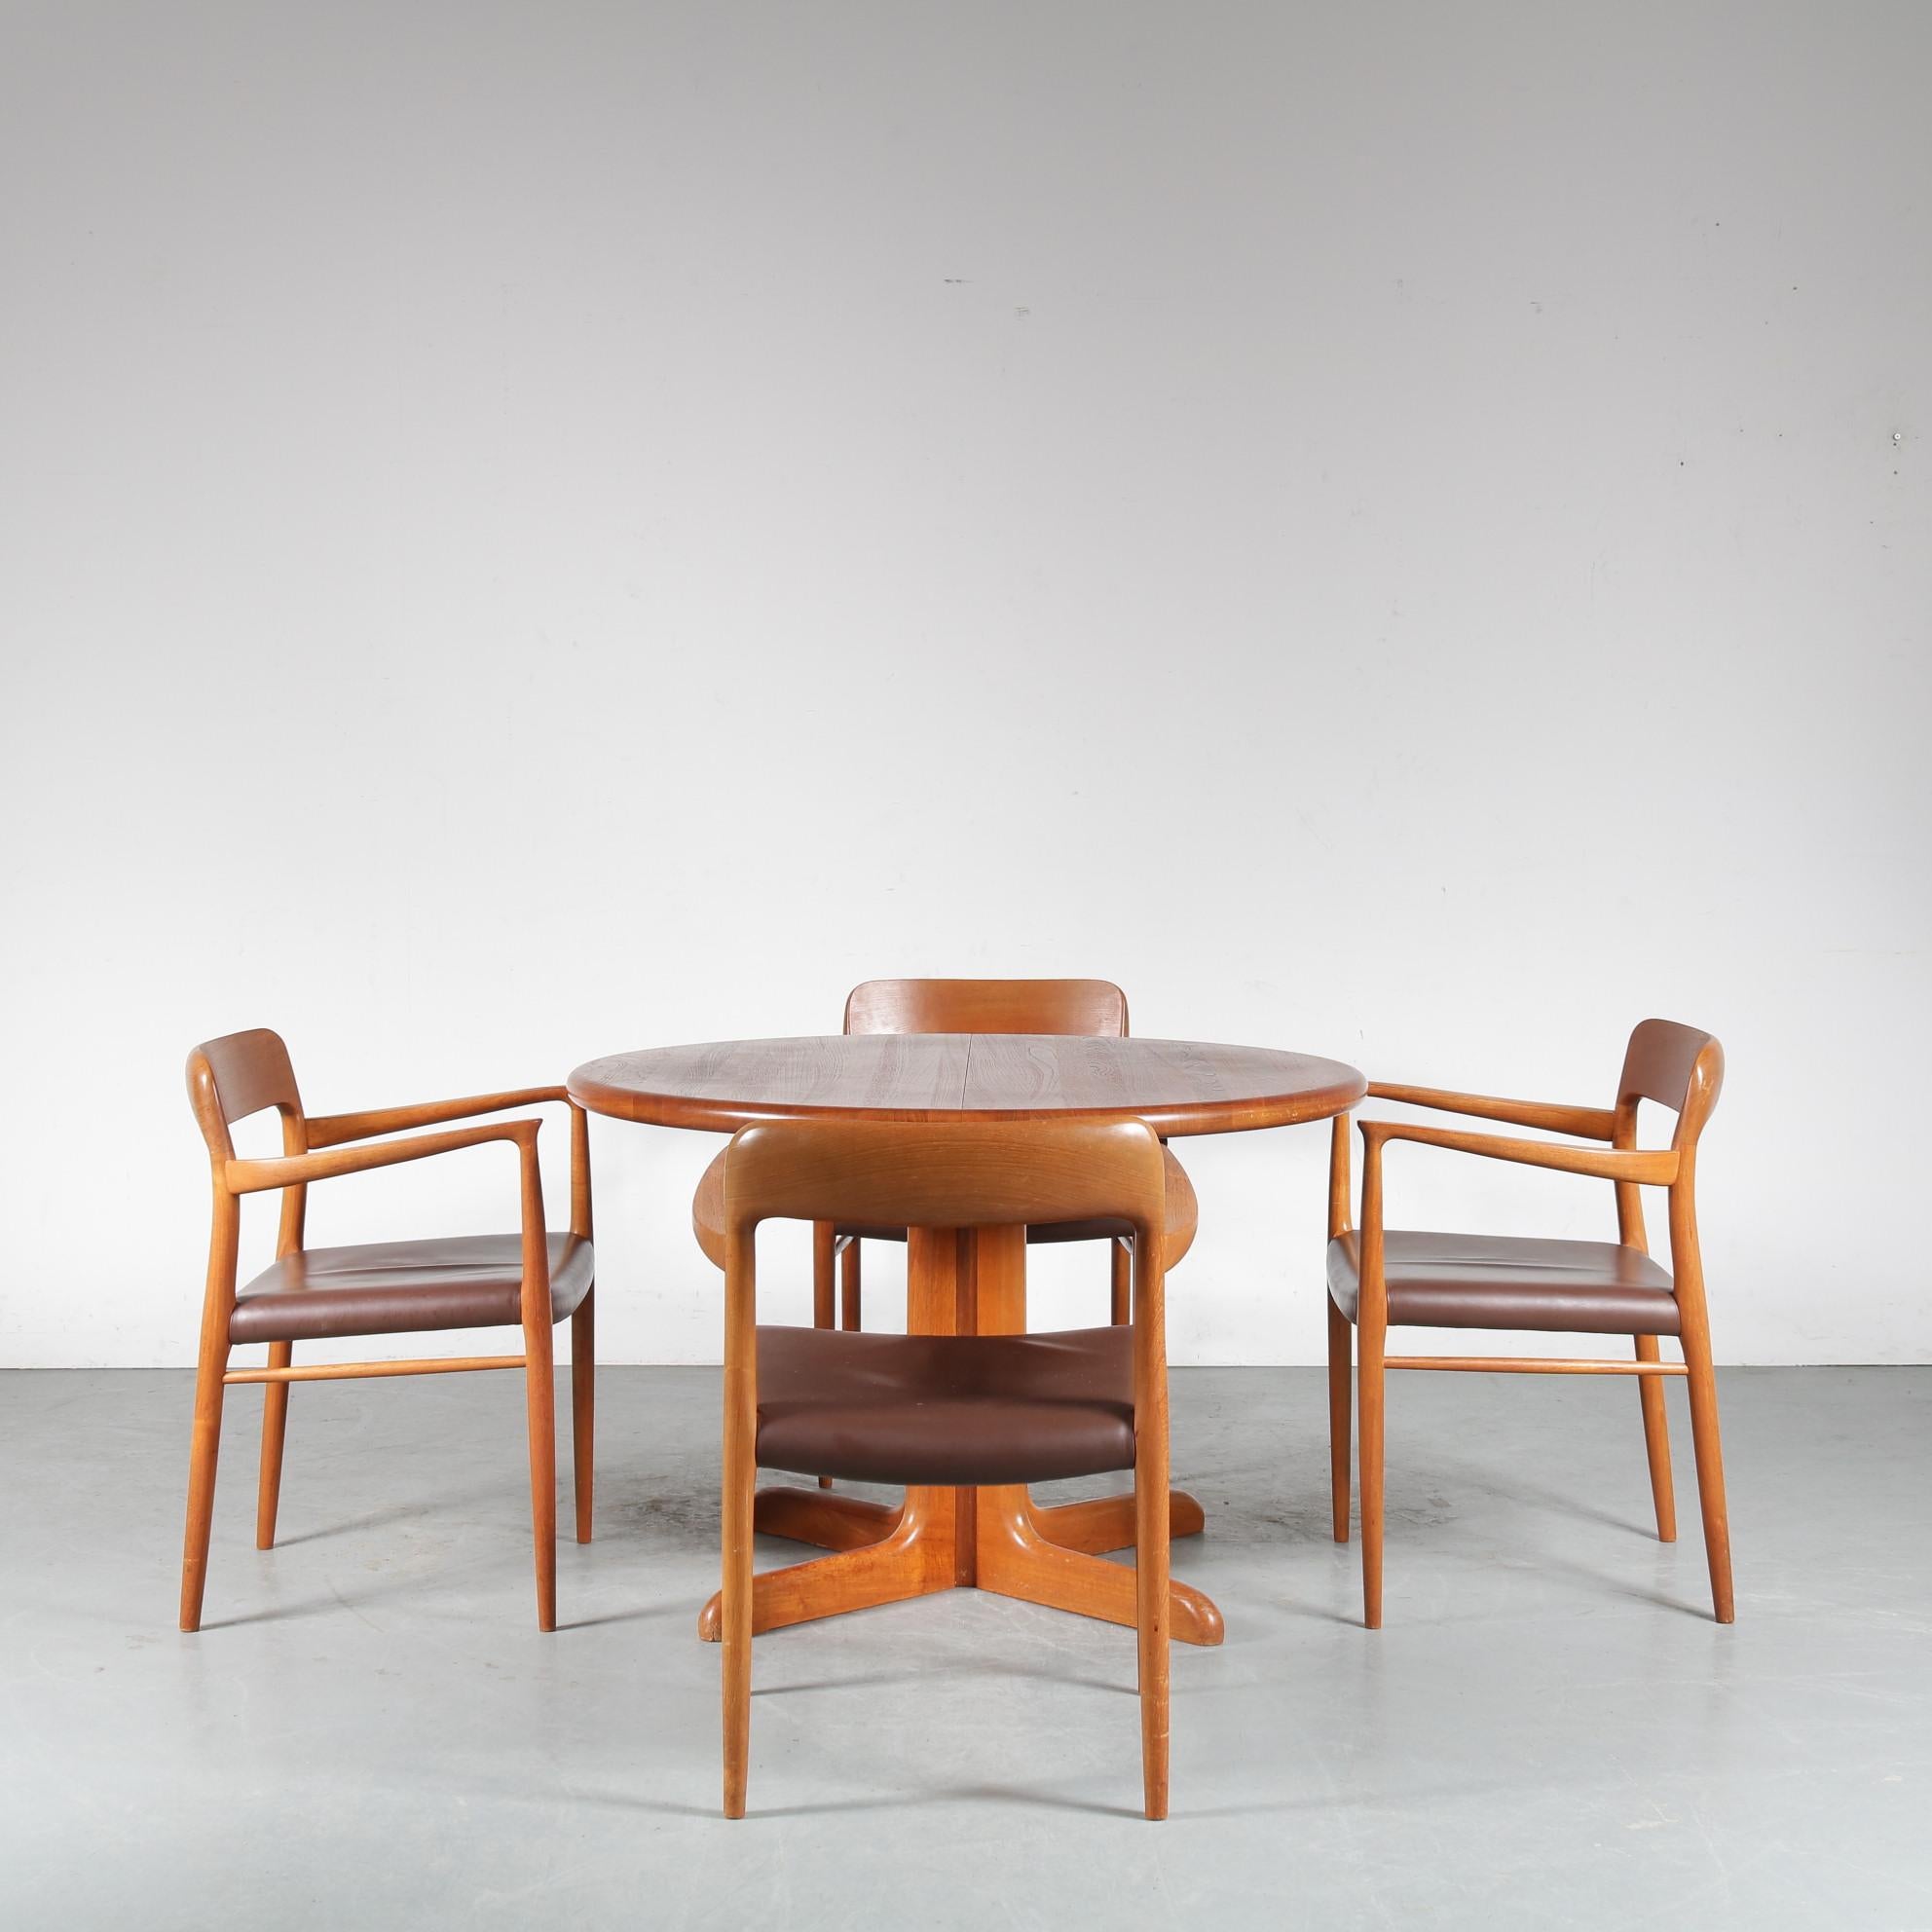 Eine schöne Essgarnitur mit einem ausziehbaren Esstisch und vier Sesseln, entworfen von Niels Otto Møller, hergestellt von Møller in Dänemark um 1960.

Der Esstisch hat eine runde Platte mit einem Durchmesser von 110 cm, die durch eine separate